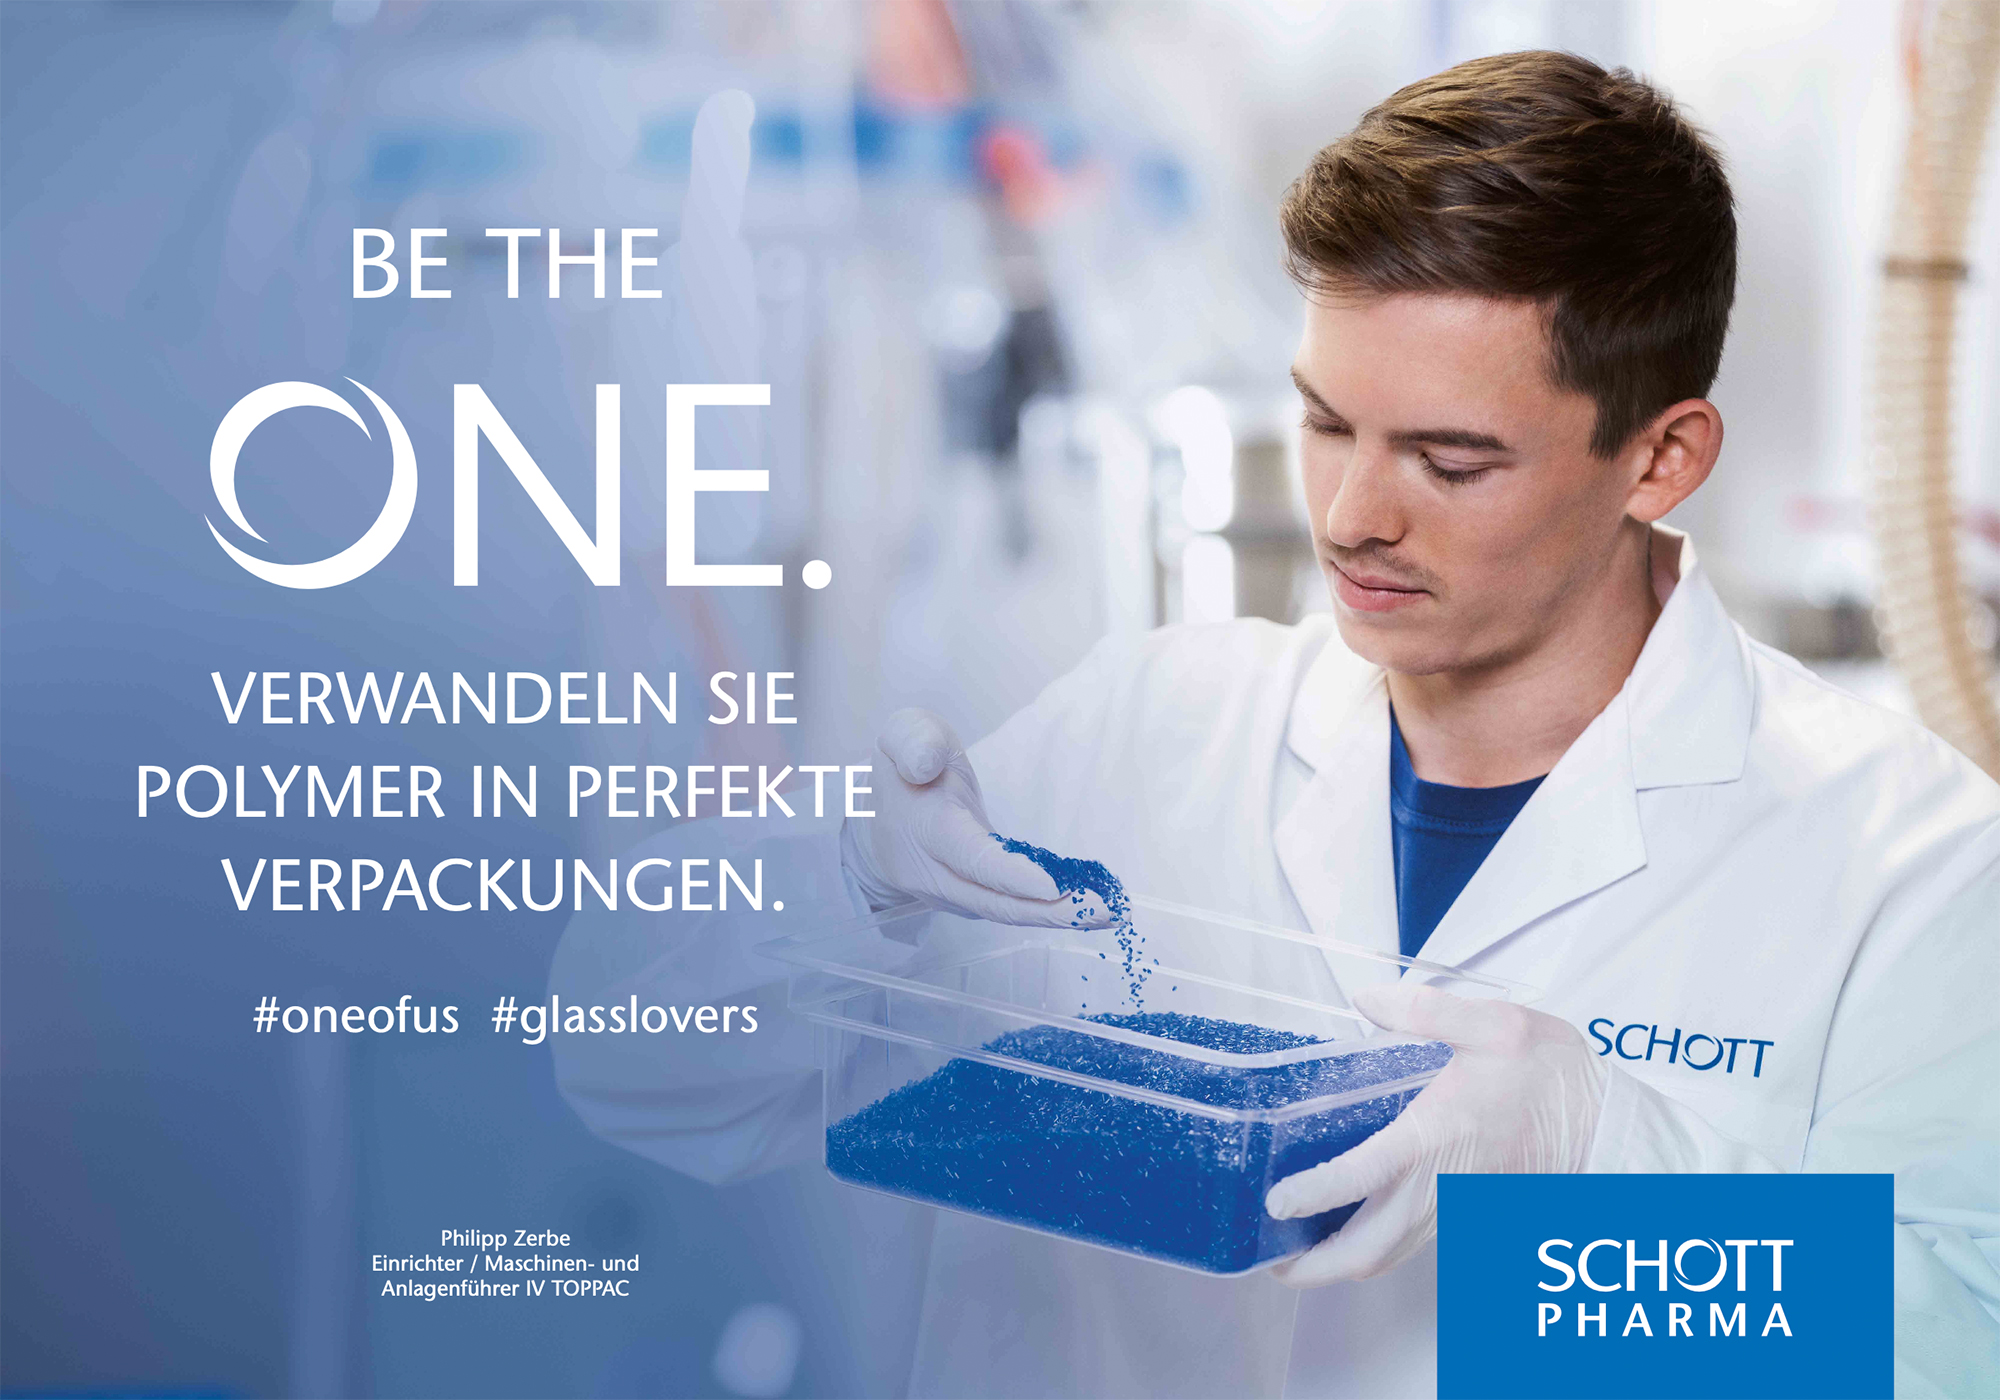 Das Fotoshooting für die aktuelle Werbekampagne von Schott Pharma in Müllheim.